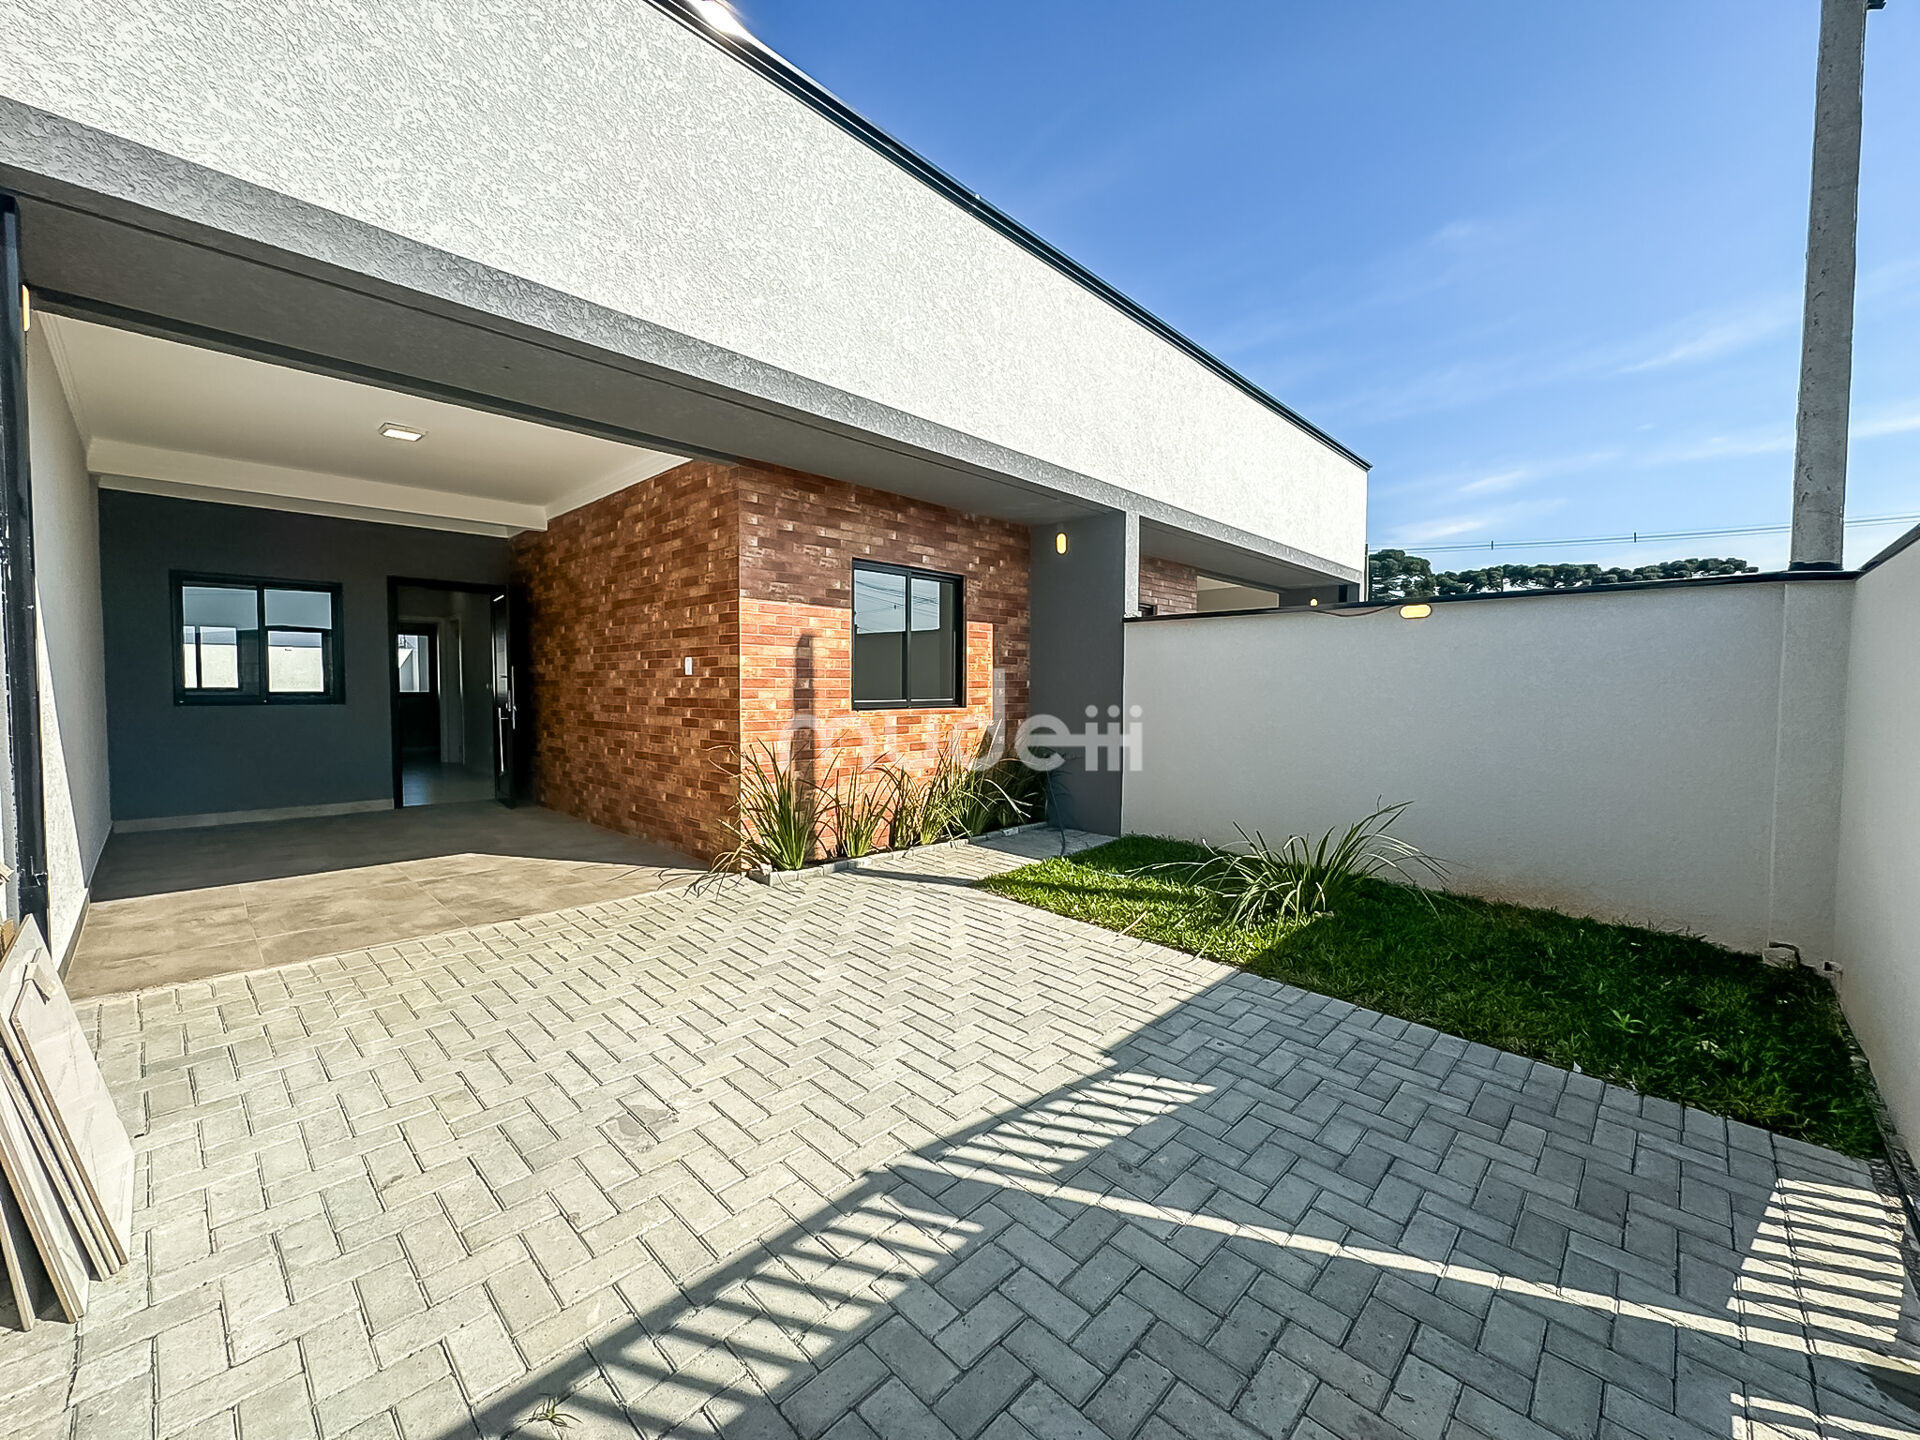 Casa à venda no bairro Barro Preto - São José dos Pinhais/PR